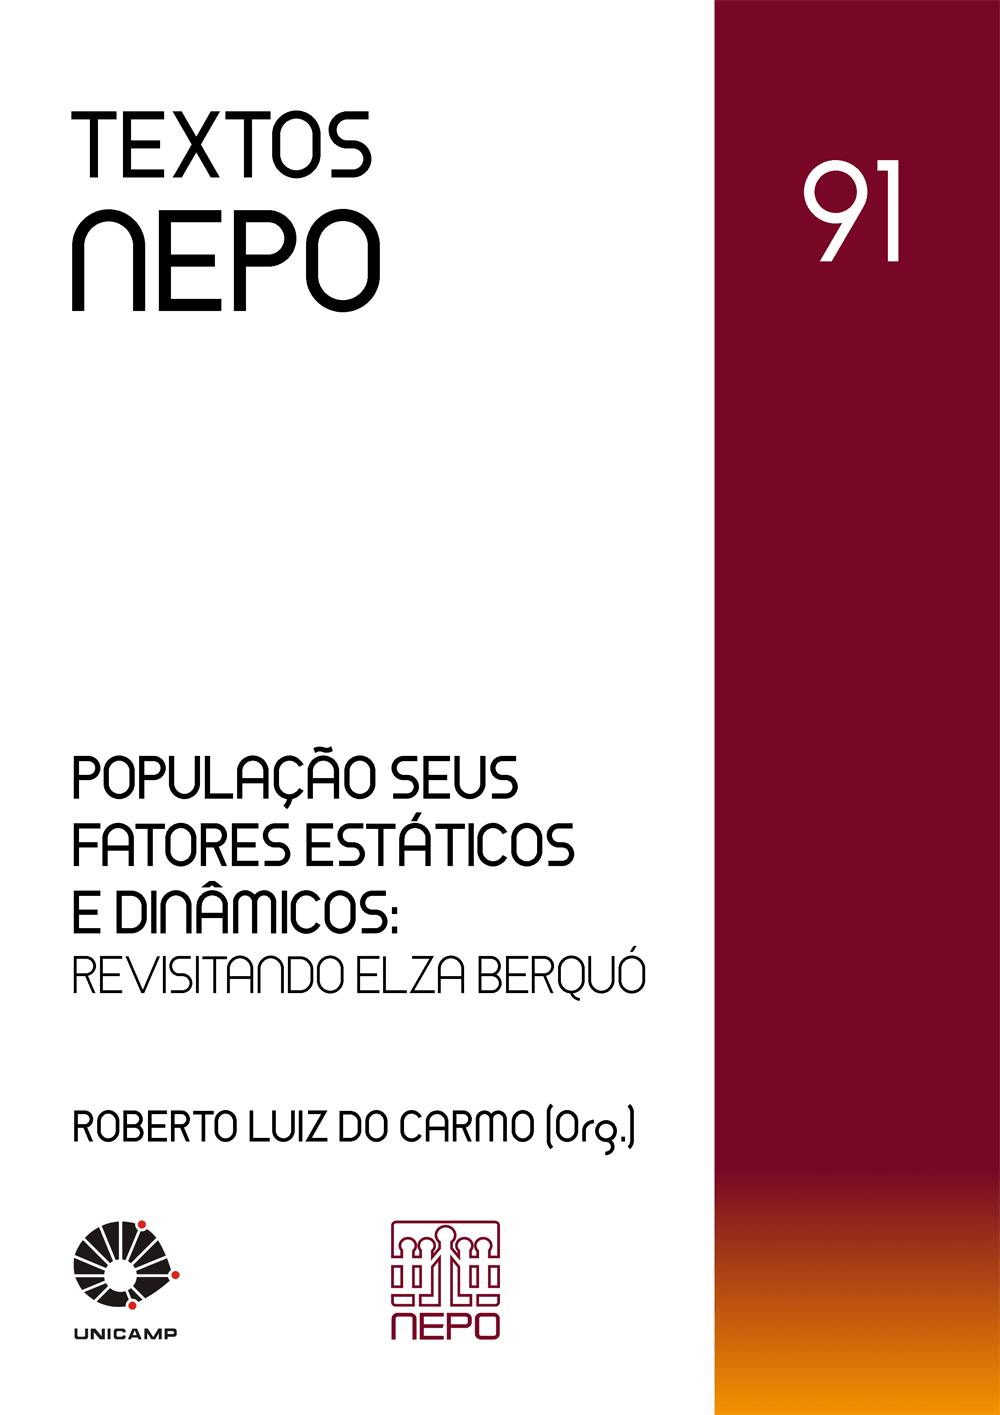 capa-textos-nepo-91